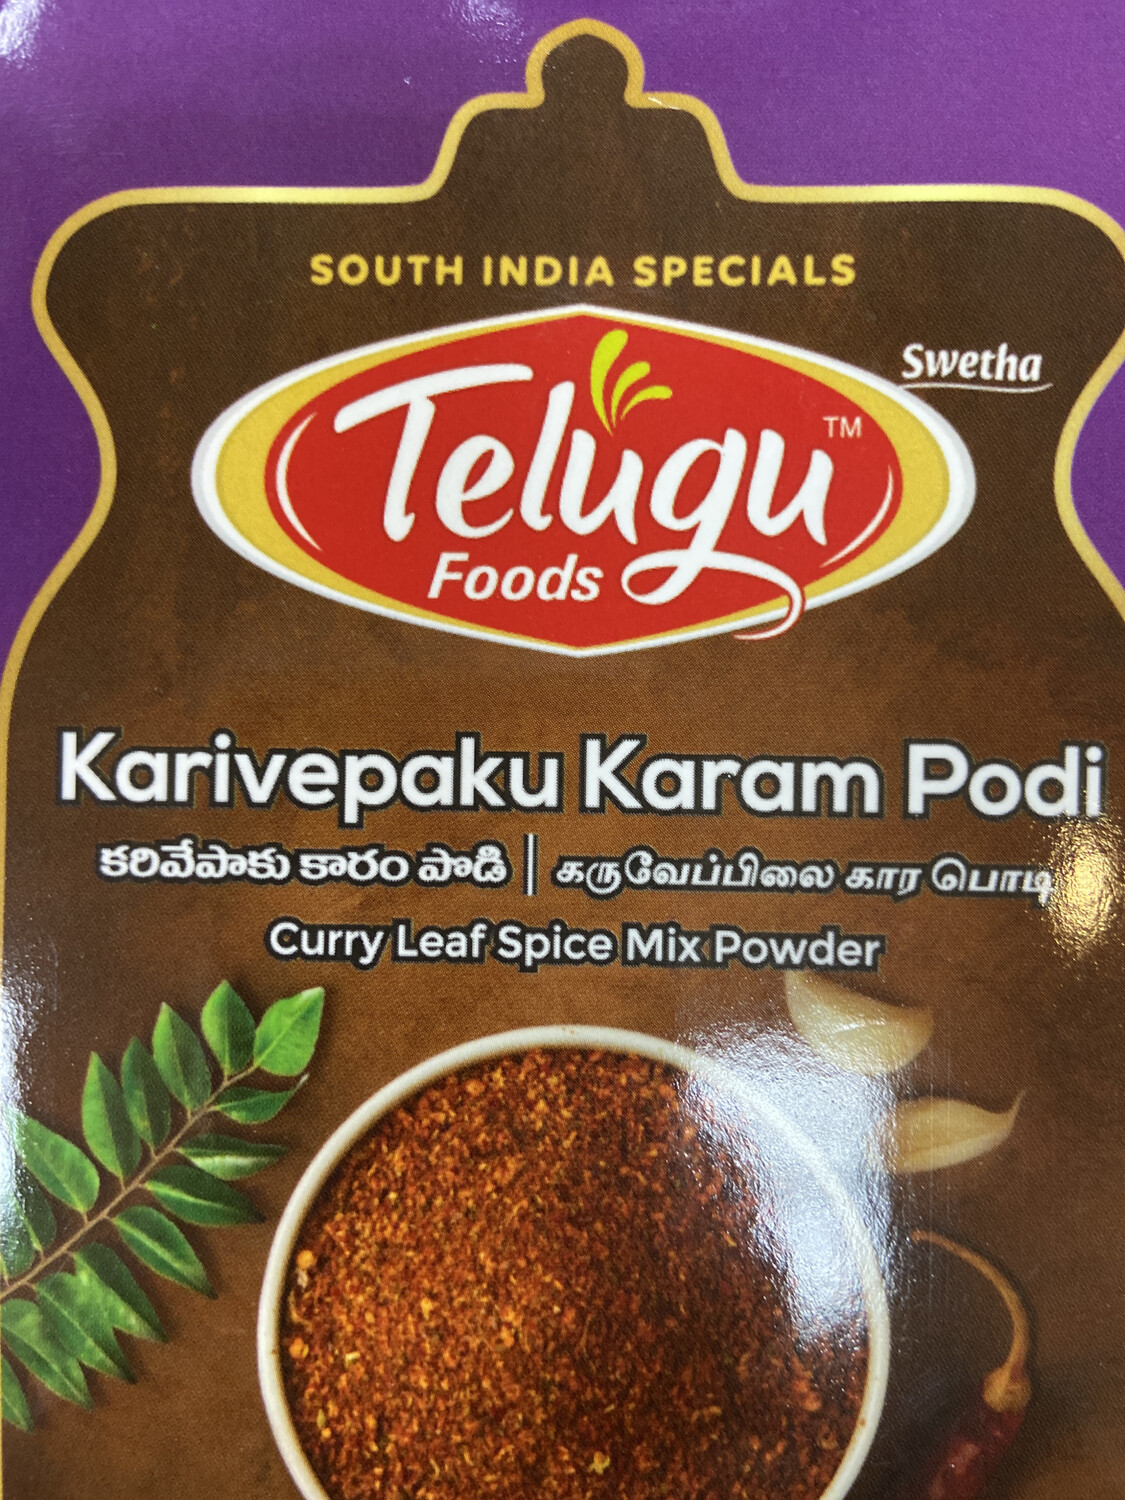 Telugu Karivepaku Karam Podi 100g